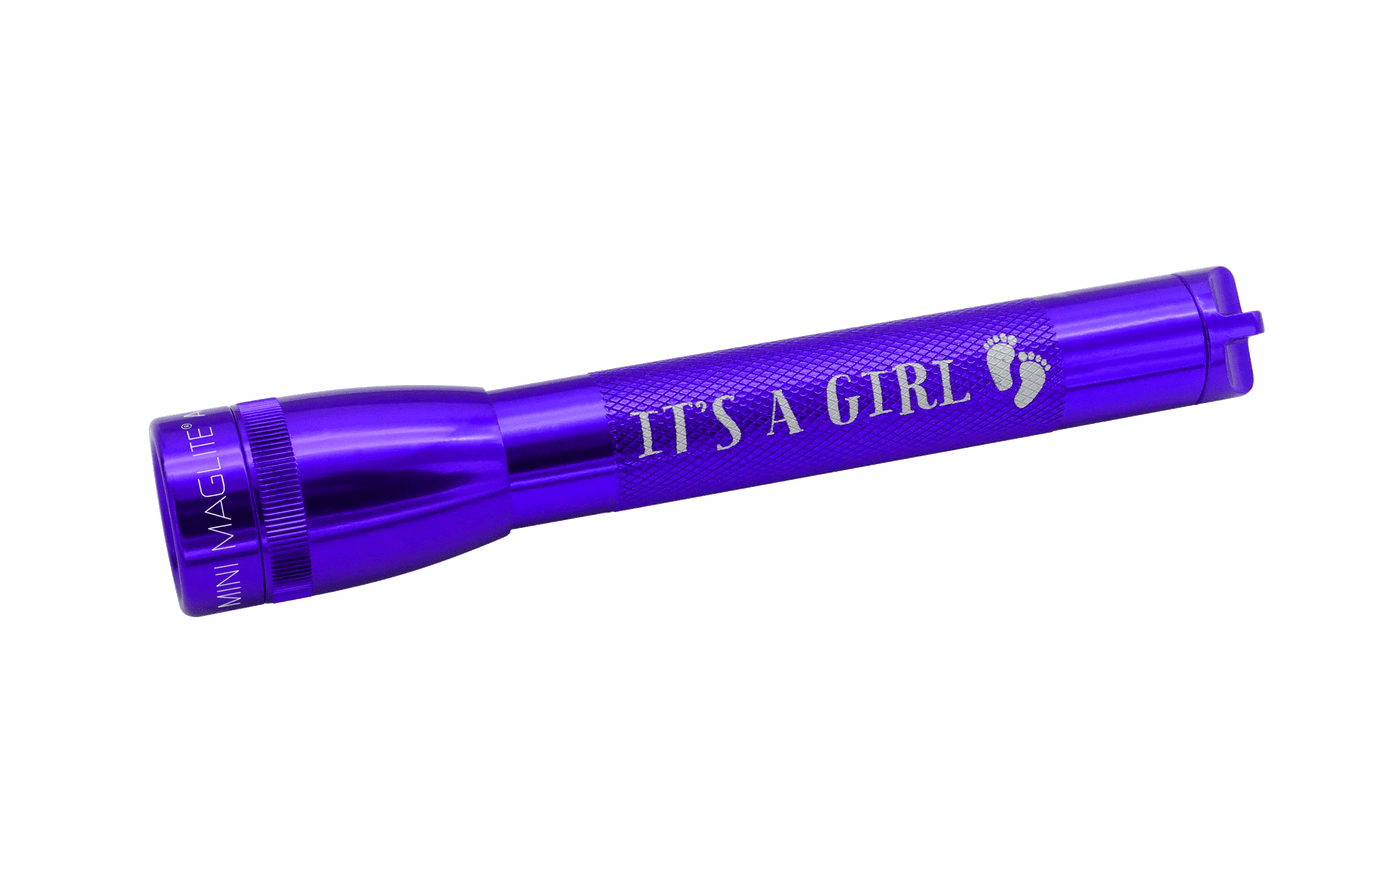 Mini Maglite - It's A Girl Xenon Flashlight